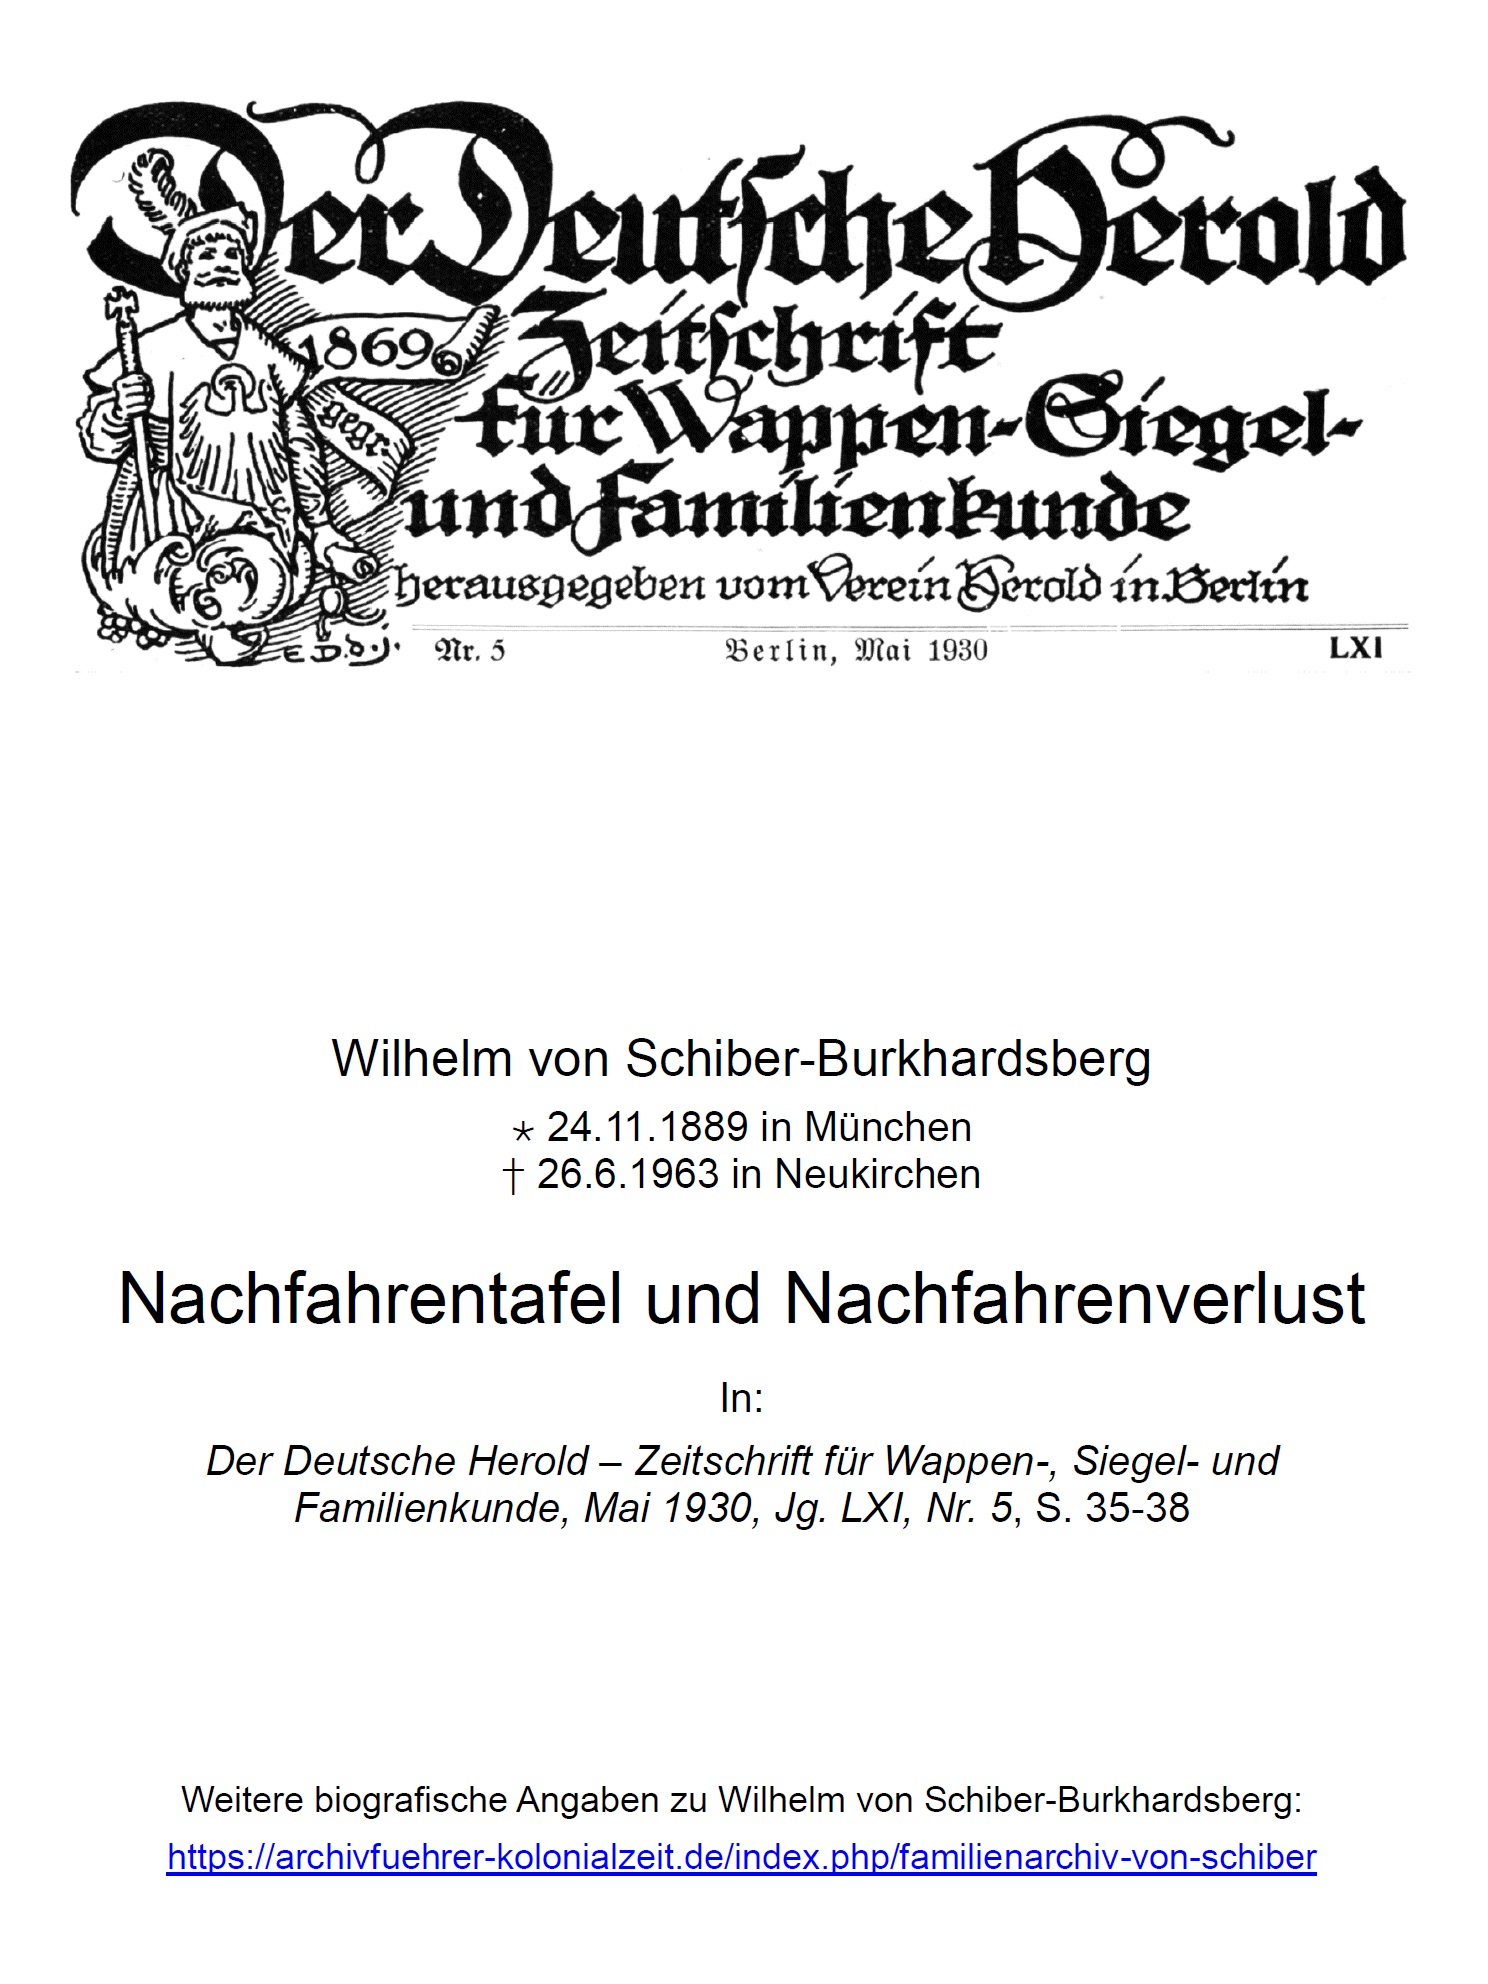 von Schiber-Burkhardsberg (1930), Nachfahrentafel und Nachfahrenverlust